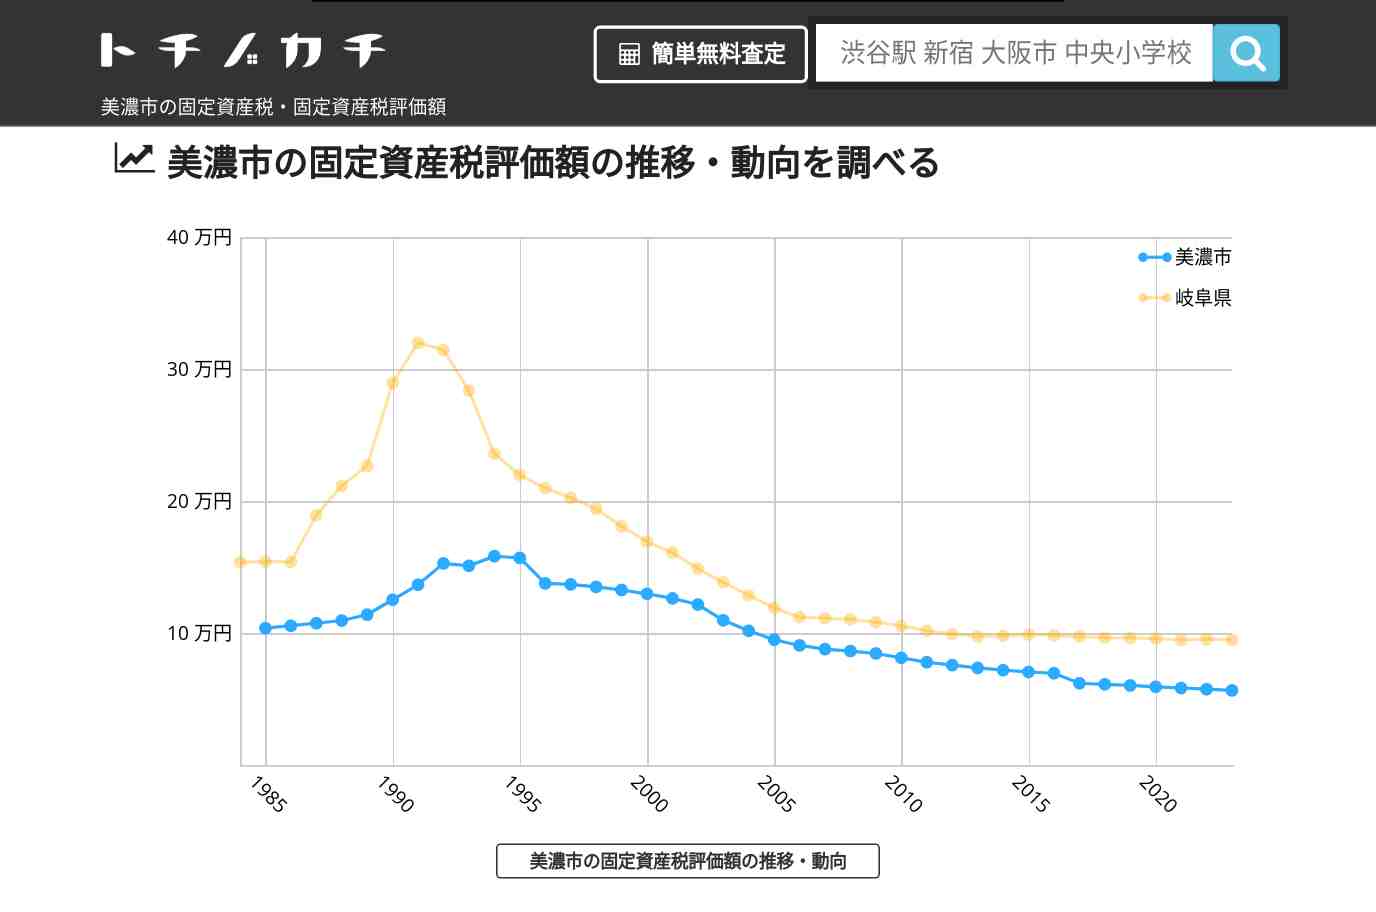 藍見小学校(岐阜県 美濃市)周辺の固定資産税・固定資産税評価額 | トチノカチ